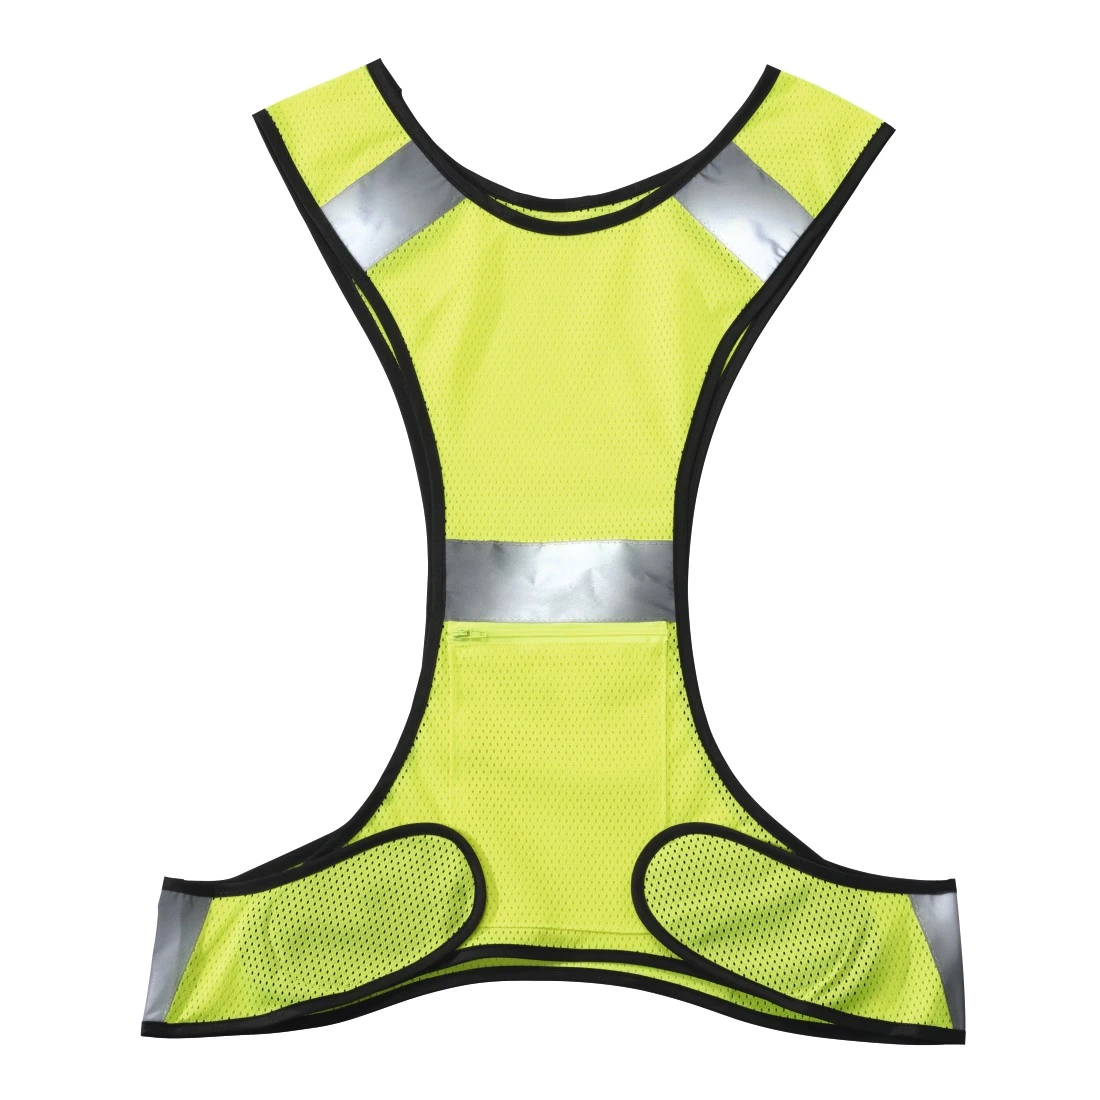 Brust Lauflicht für Läufer und Jogger Einstellbarer Balken und Reflektor  Laufweste Gear_costbuy